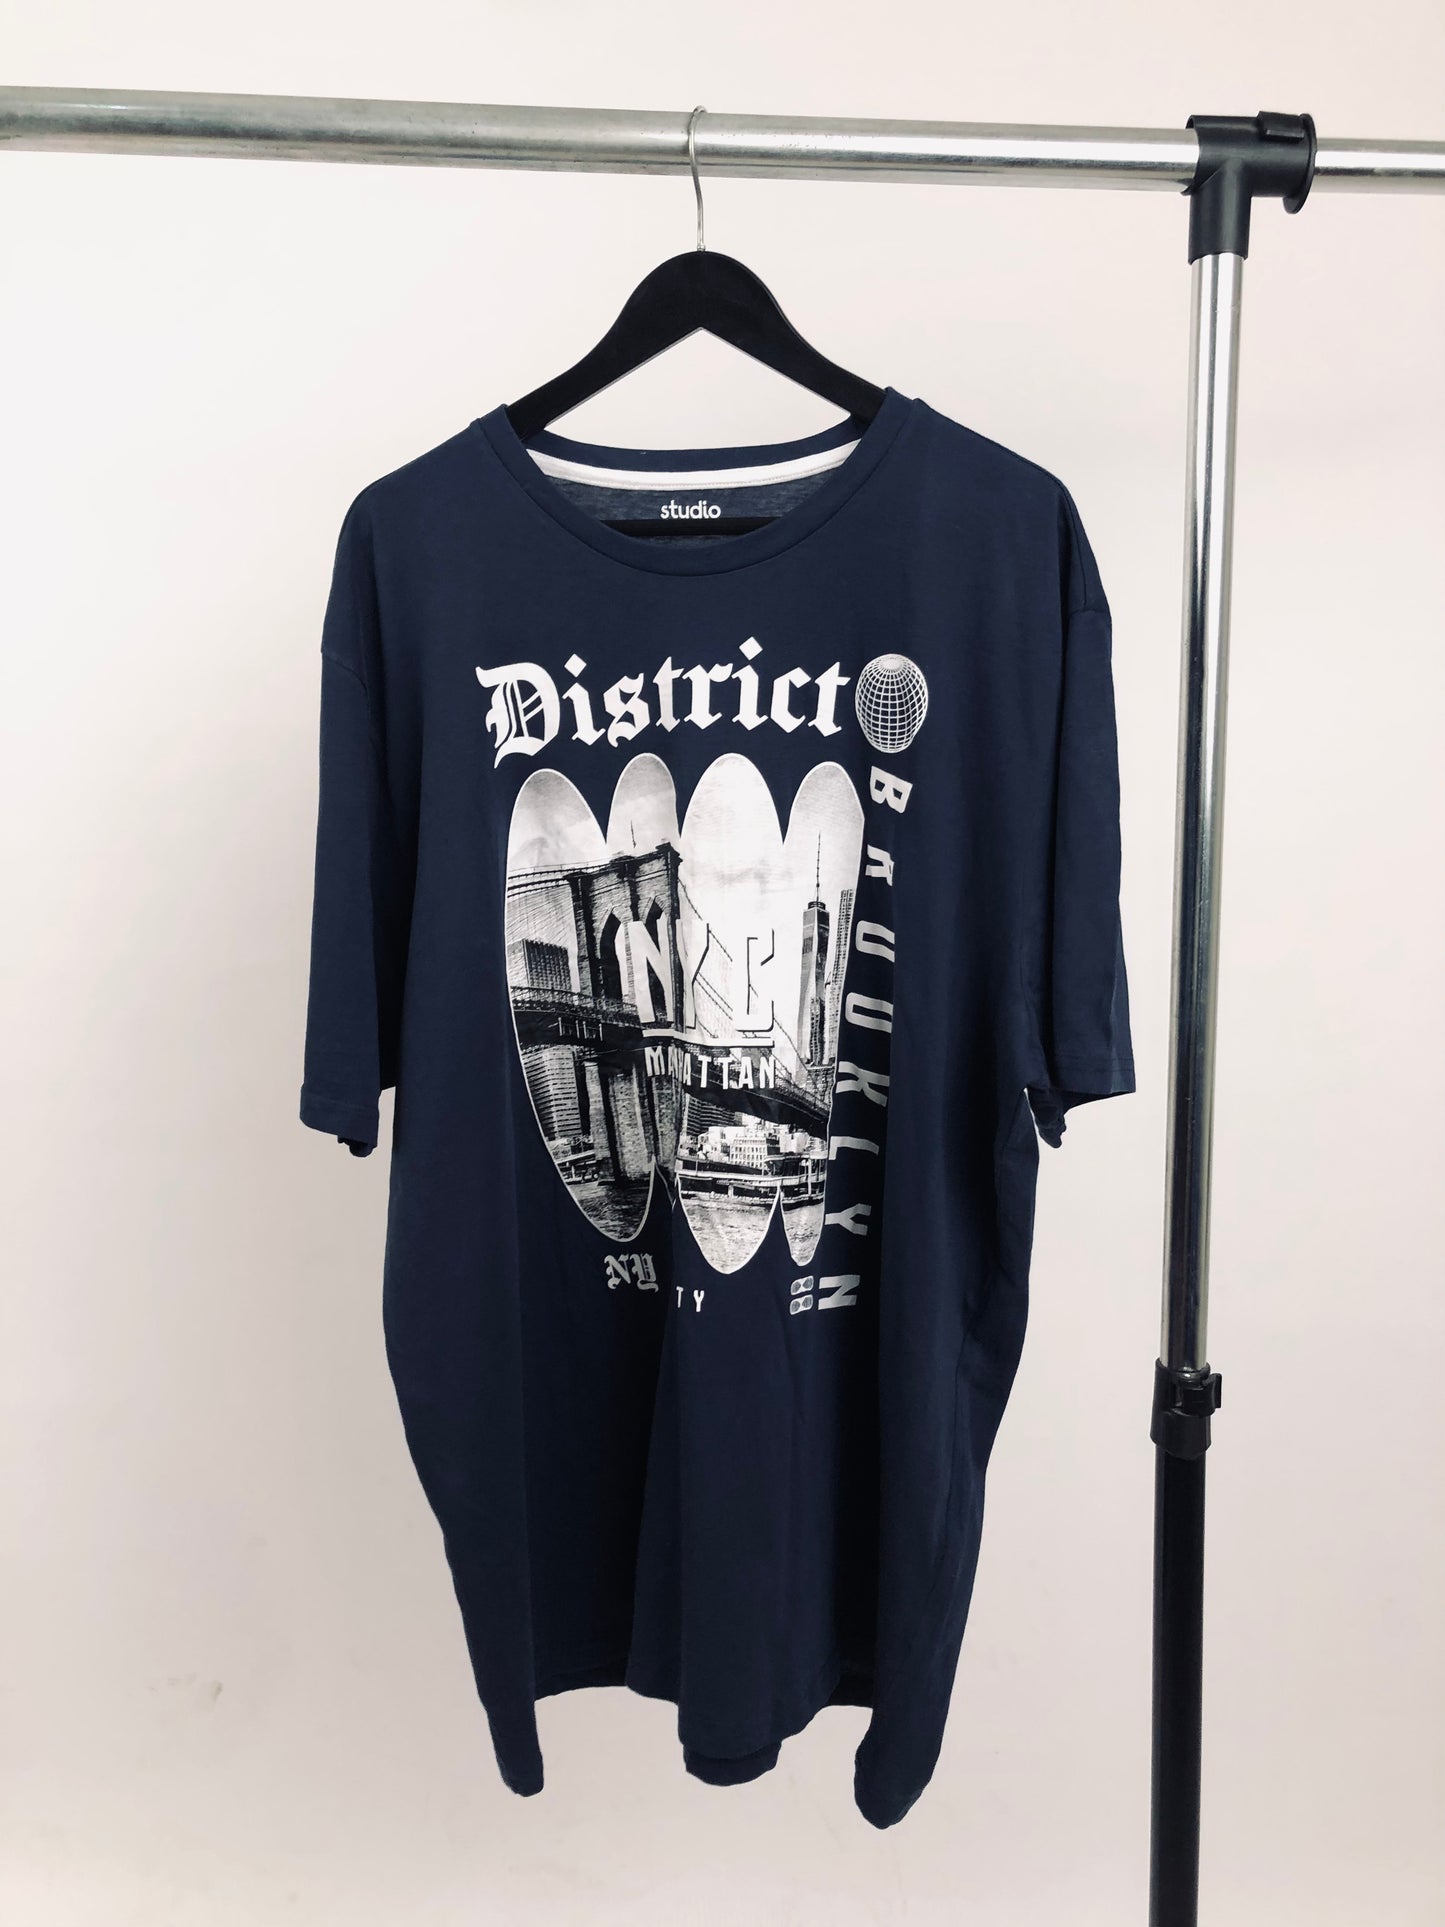 Studio District T-shirt in navy